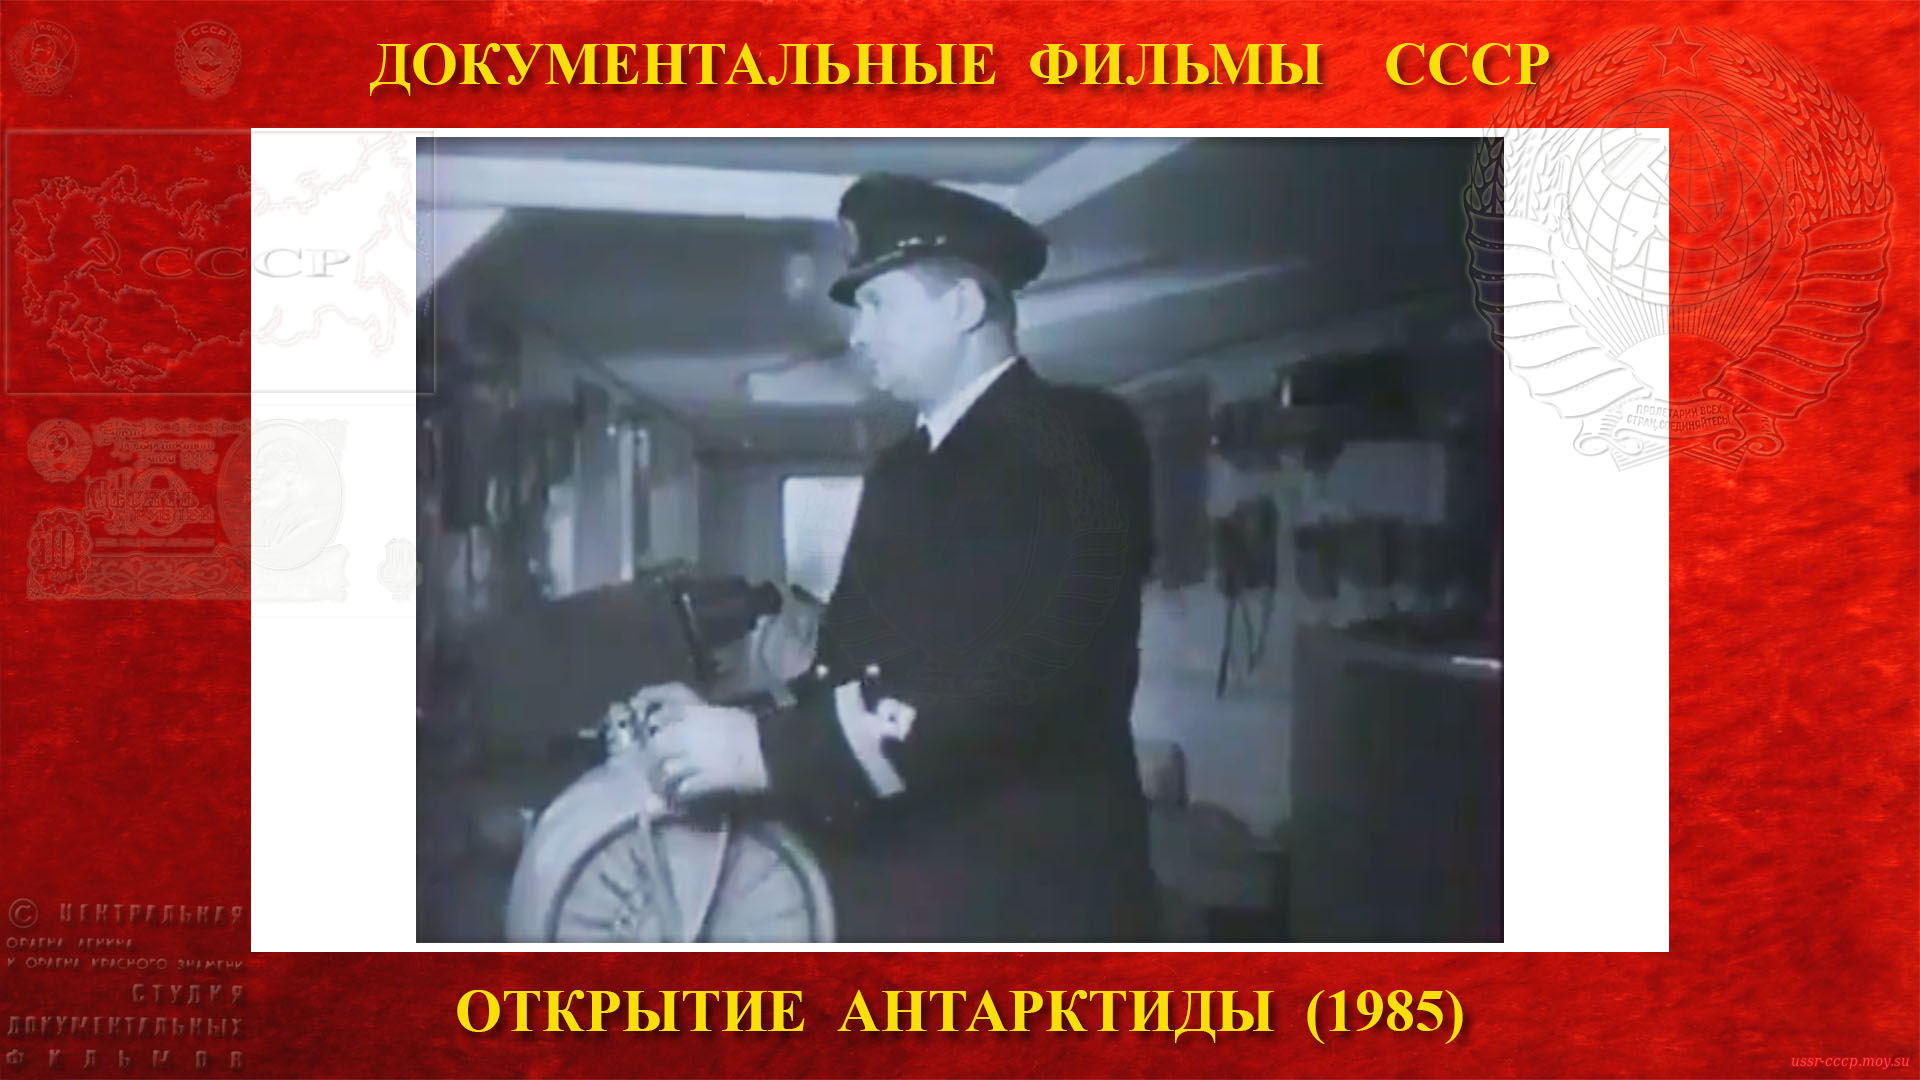 Открытие Антарктиды — После торжественного митинга в Калининградском порту, в 6 часов вечера 30 ноября 1955 года капитан дизель-электрохода «Обь» Иван Александрович Ман дал полный вперёд. 